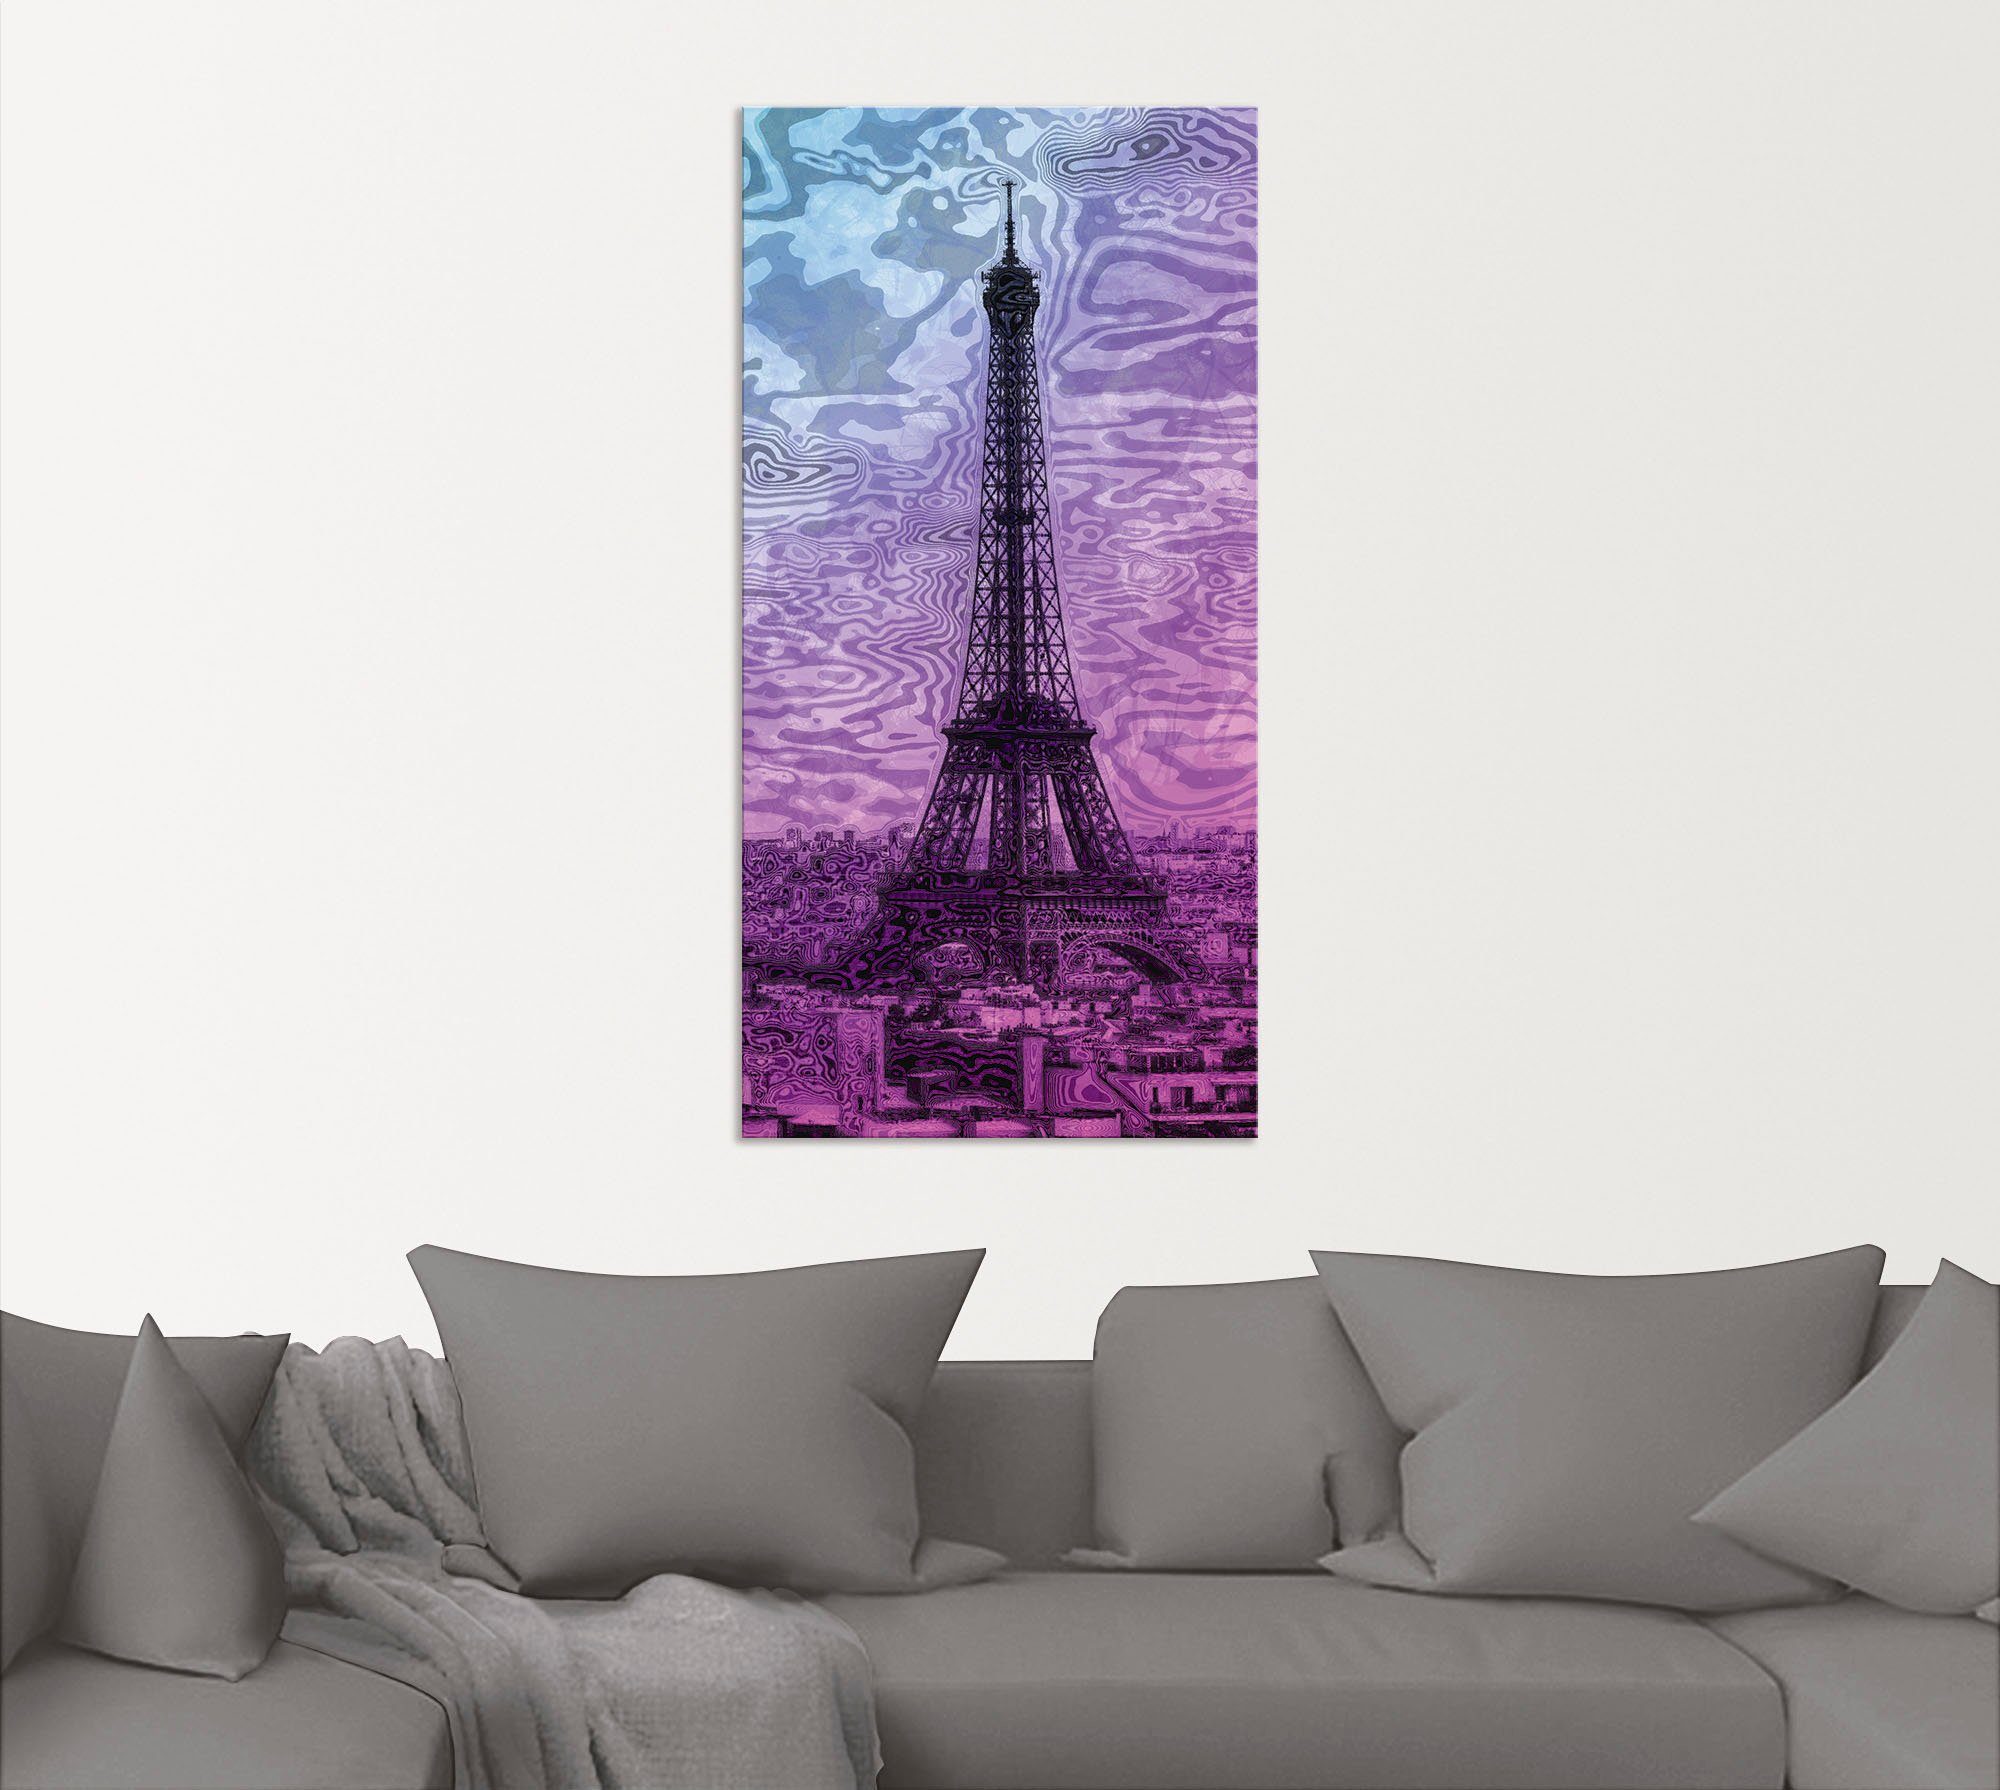 Artland Artprint Parijs Eiffeltoren paars/blauw in vele afmetingen & productsoorten - artprint van aluminium / artprint voor buiten, artprint op linnen, poster, muursticker / wandf